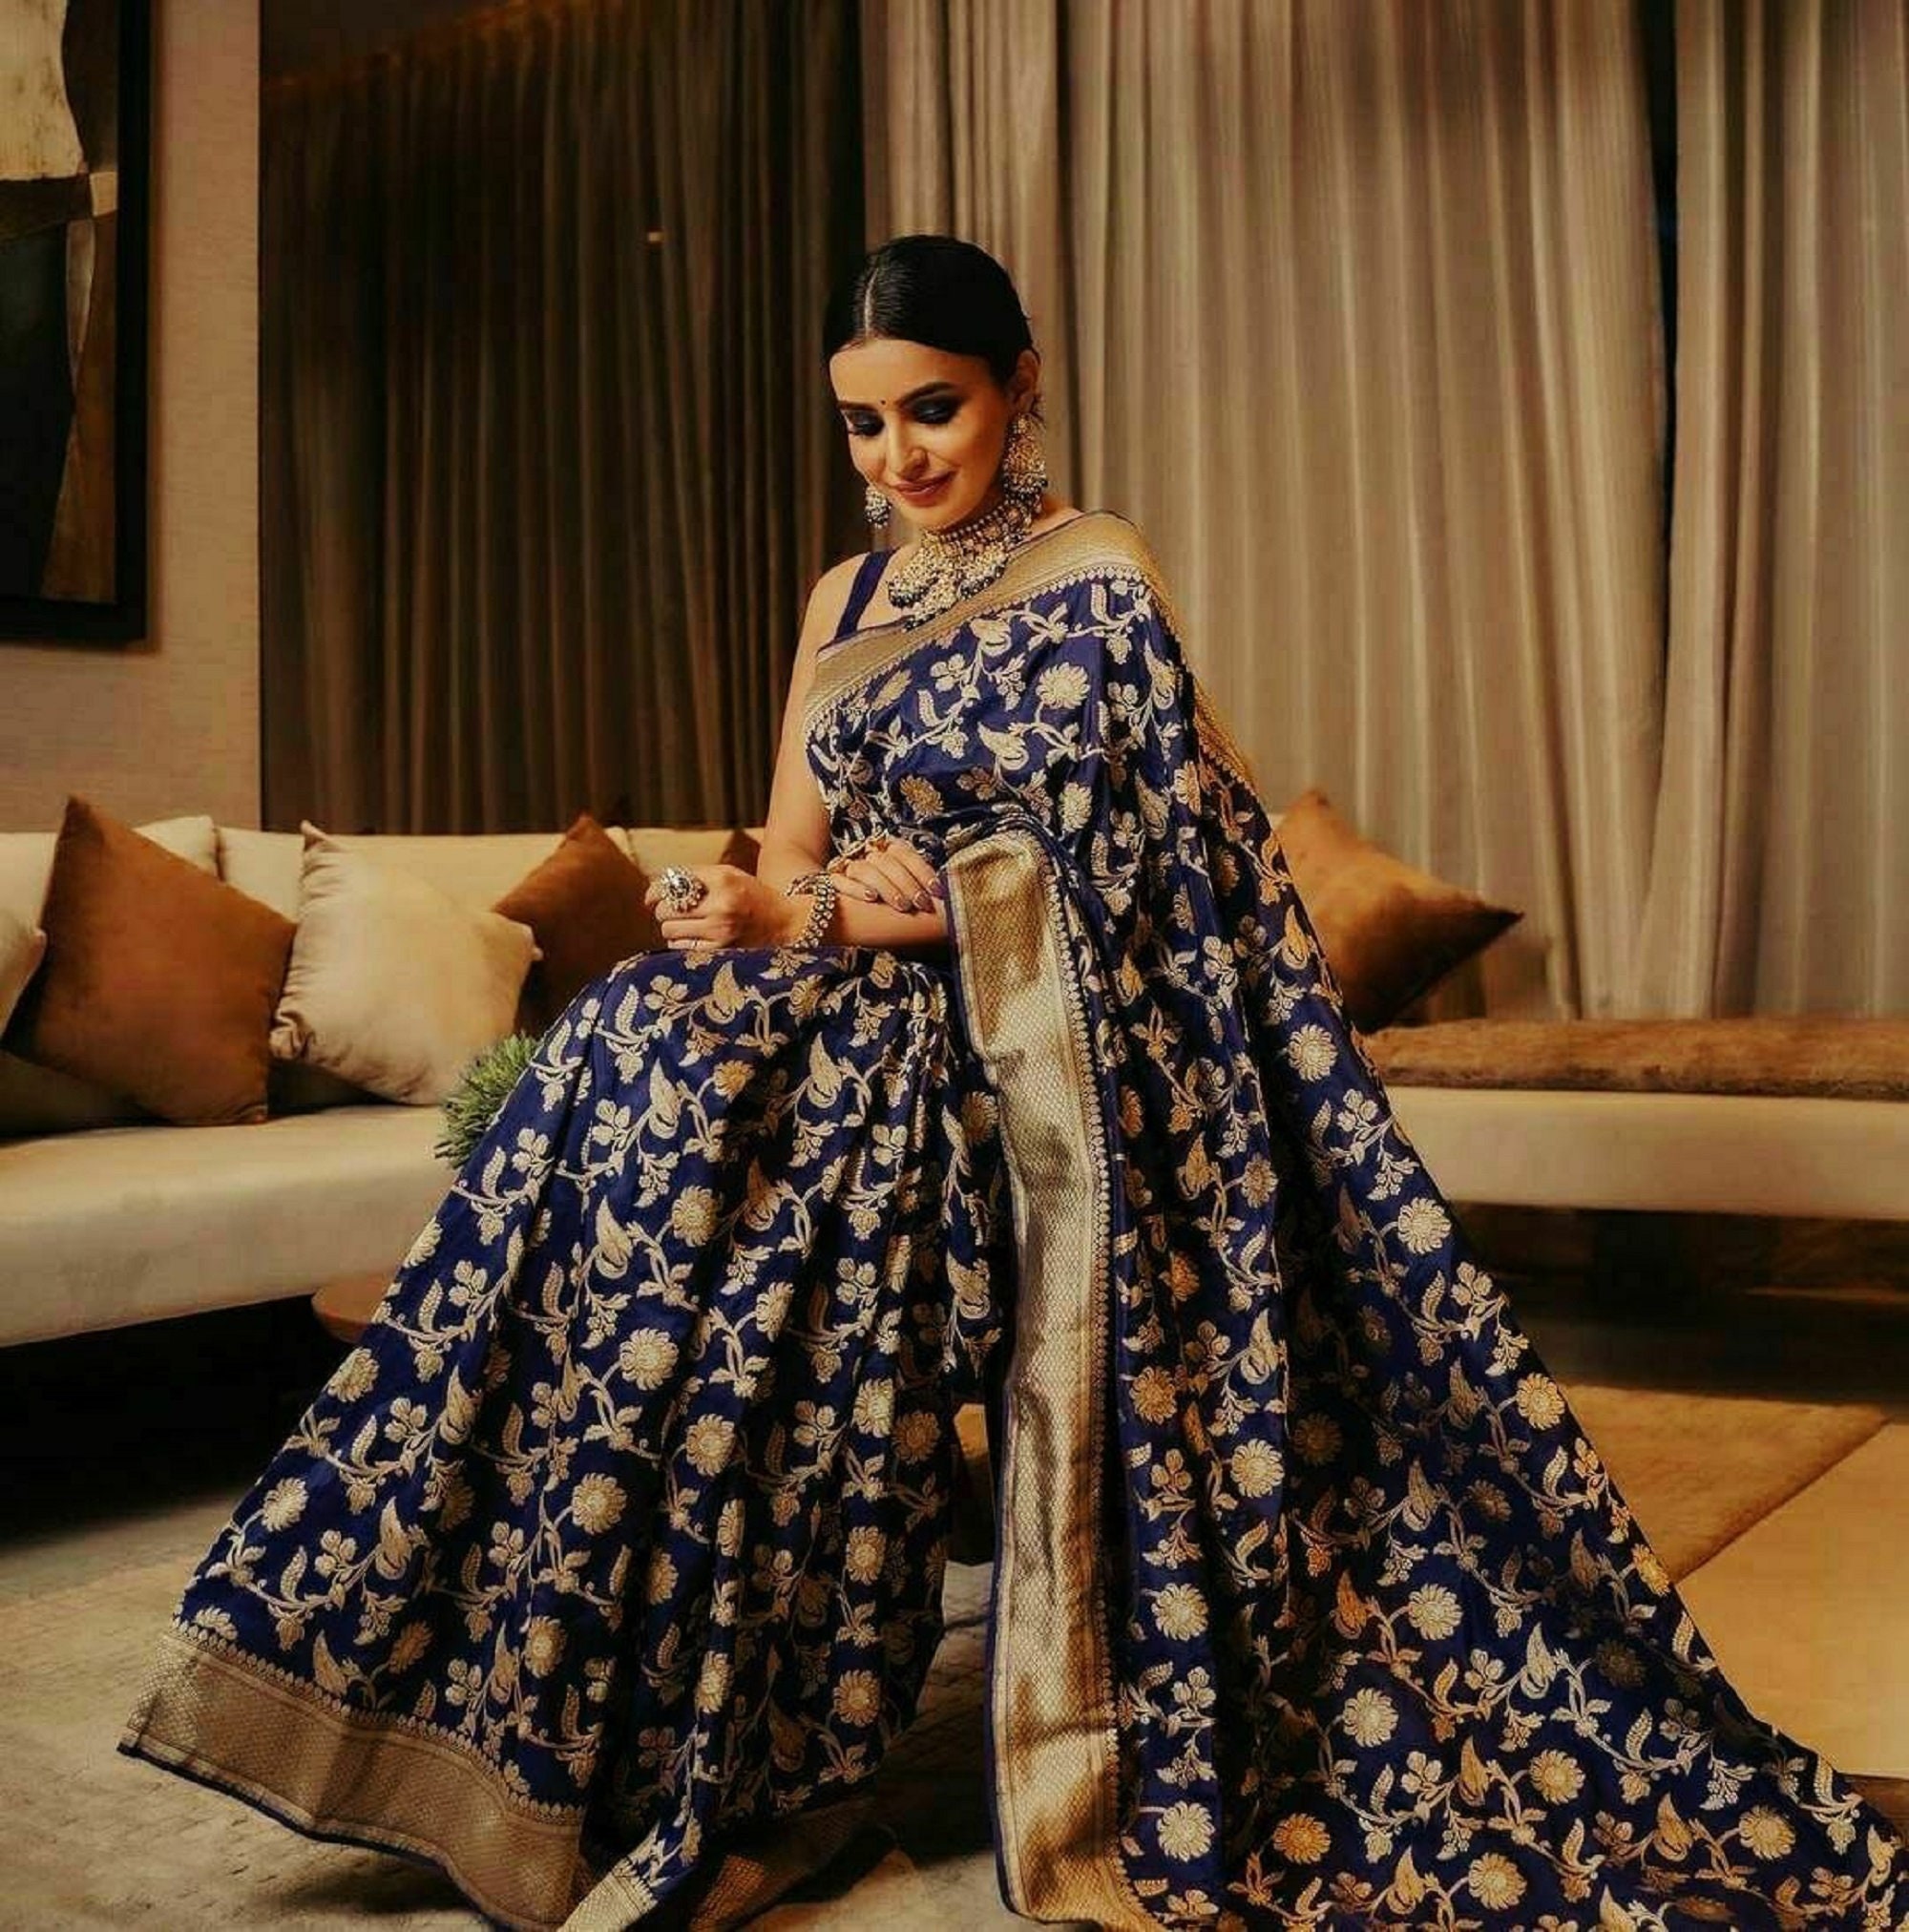 Designer Silk Saree Indian Ethnic Wear Wedding Formal Banarasi | Etsy UK